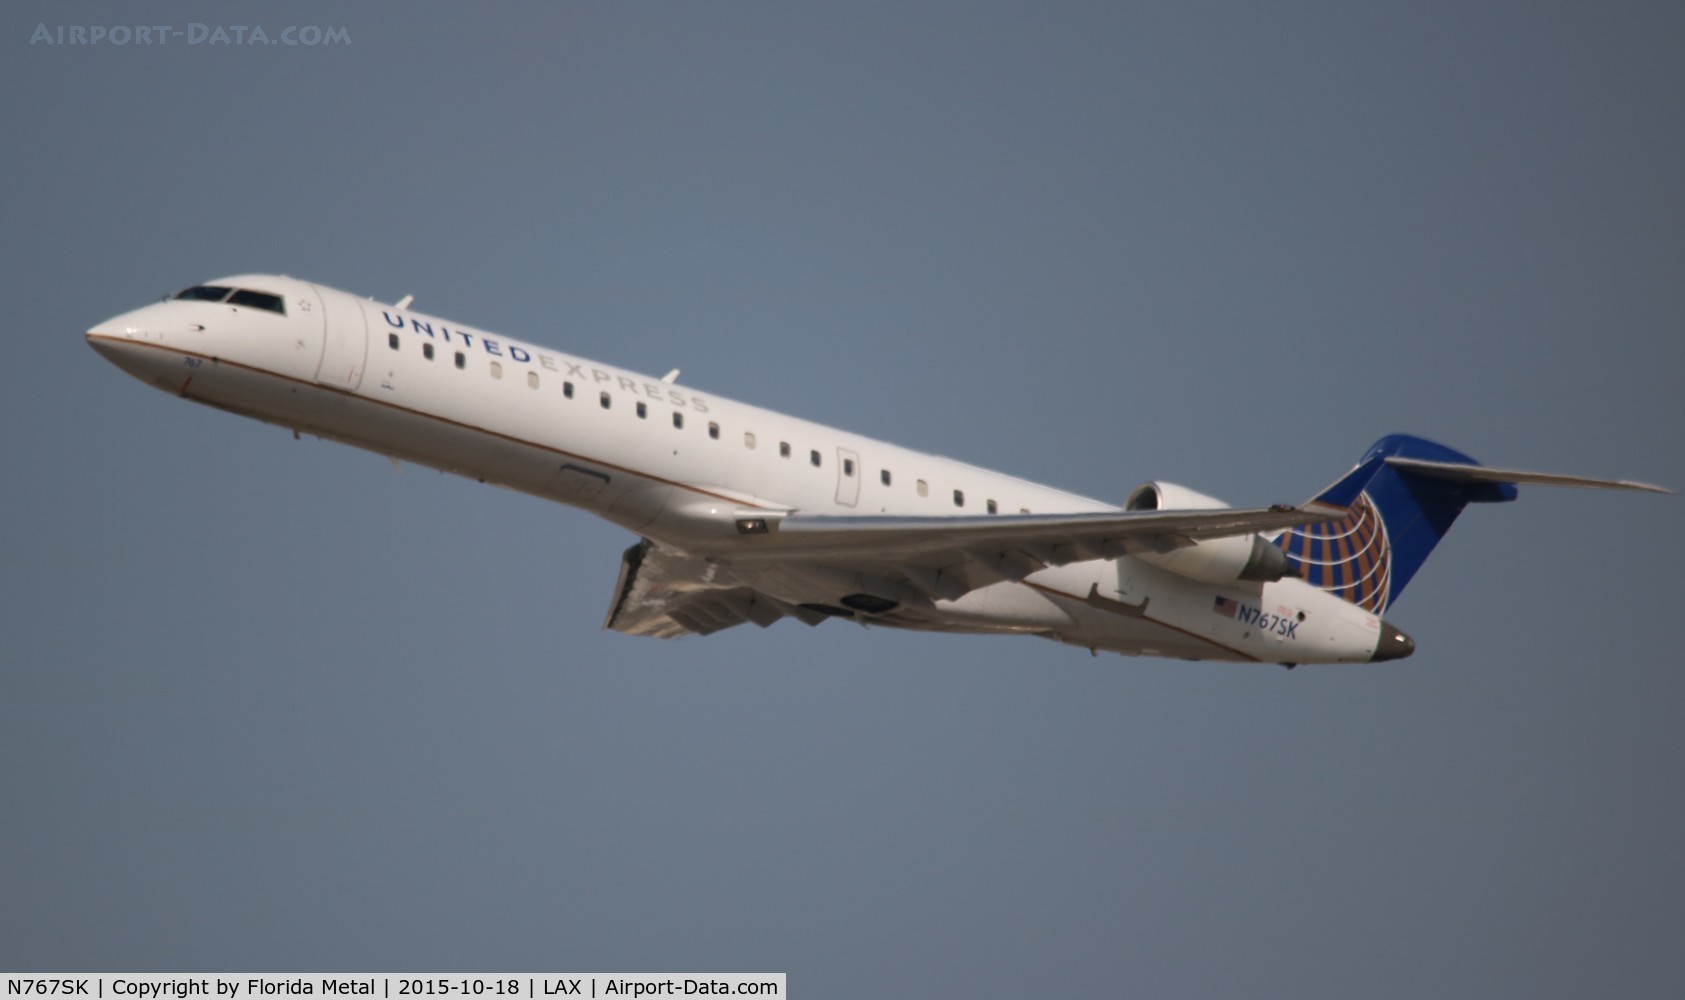 N767SK, 2005 Bombardier CRJ-702 (CL-600-2C10) Regional Jet C/N 10233, United Express